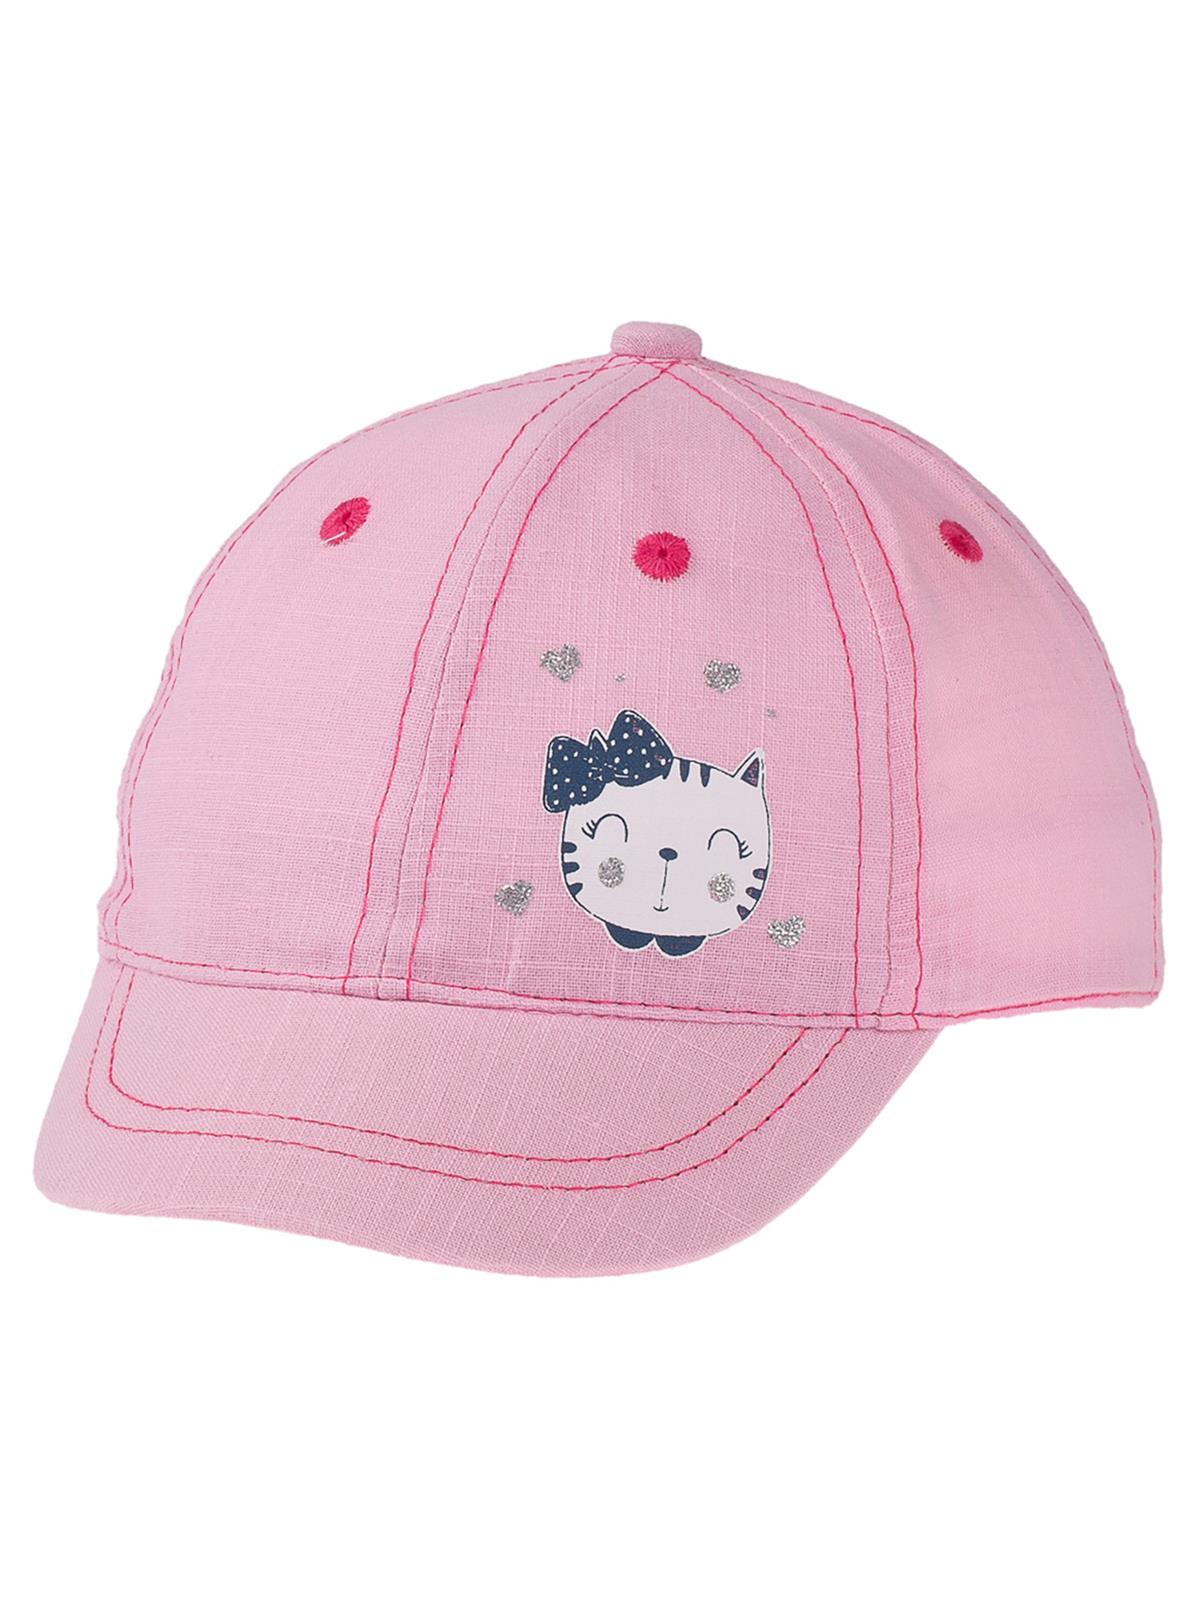 Kitti Kız Bebek Kep Şapka 0-18 Ay Pembe